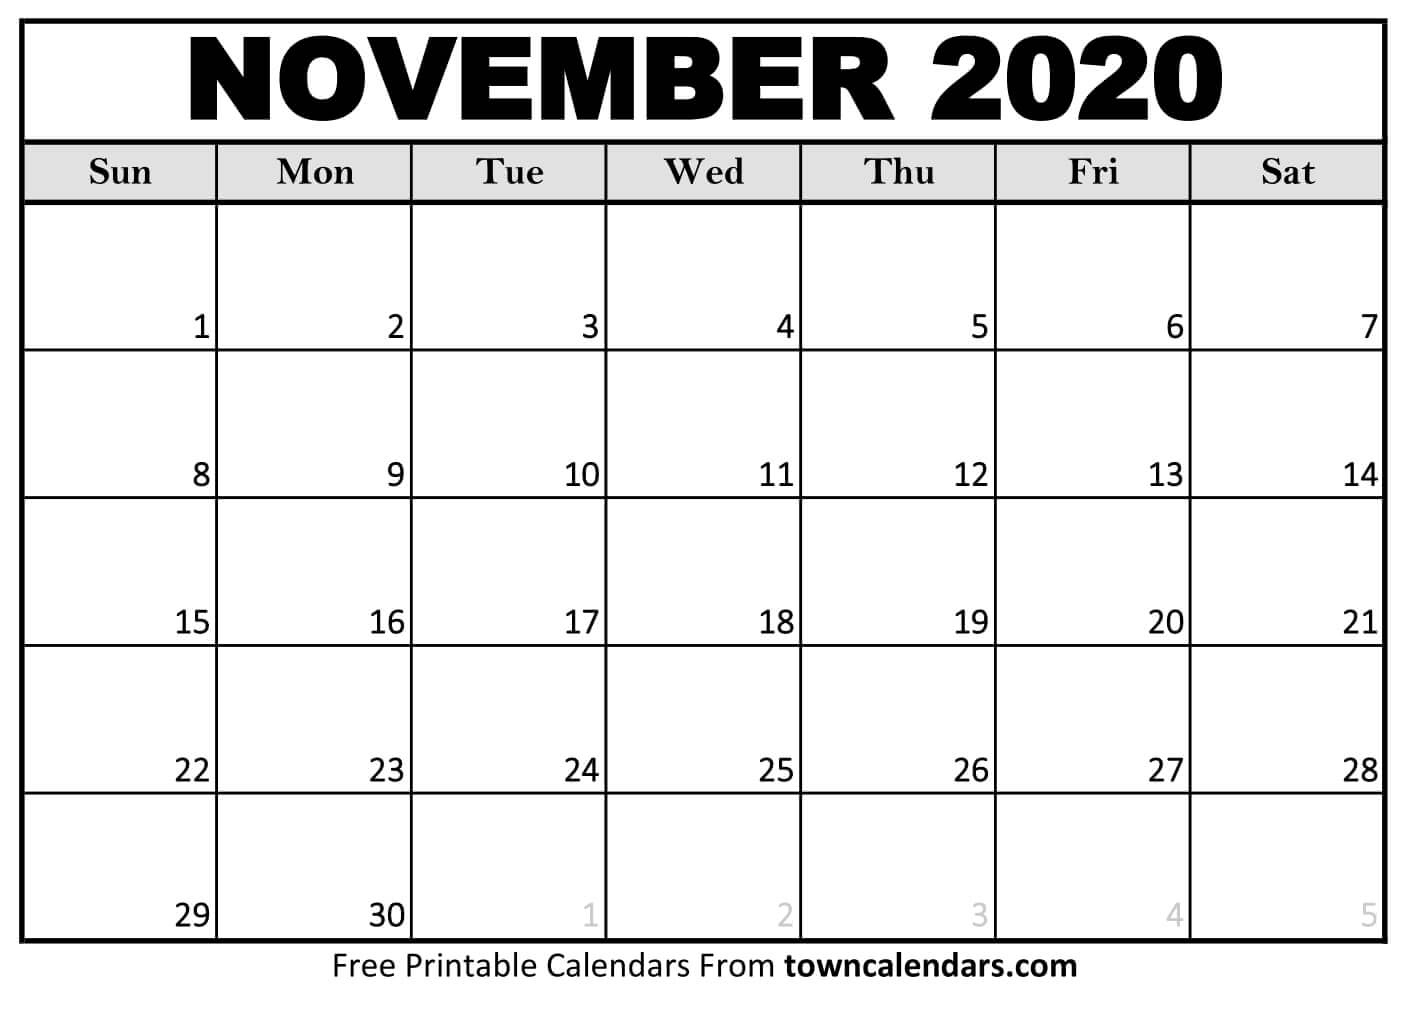 Printable November 2020 Calendar - Towncalendars November 2020 - March 2021 Calendar